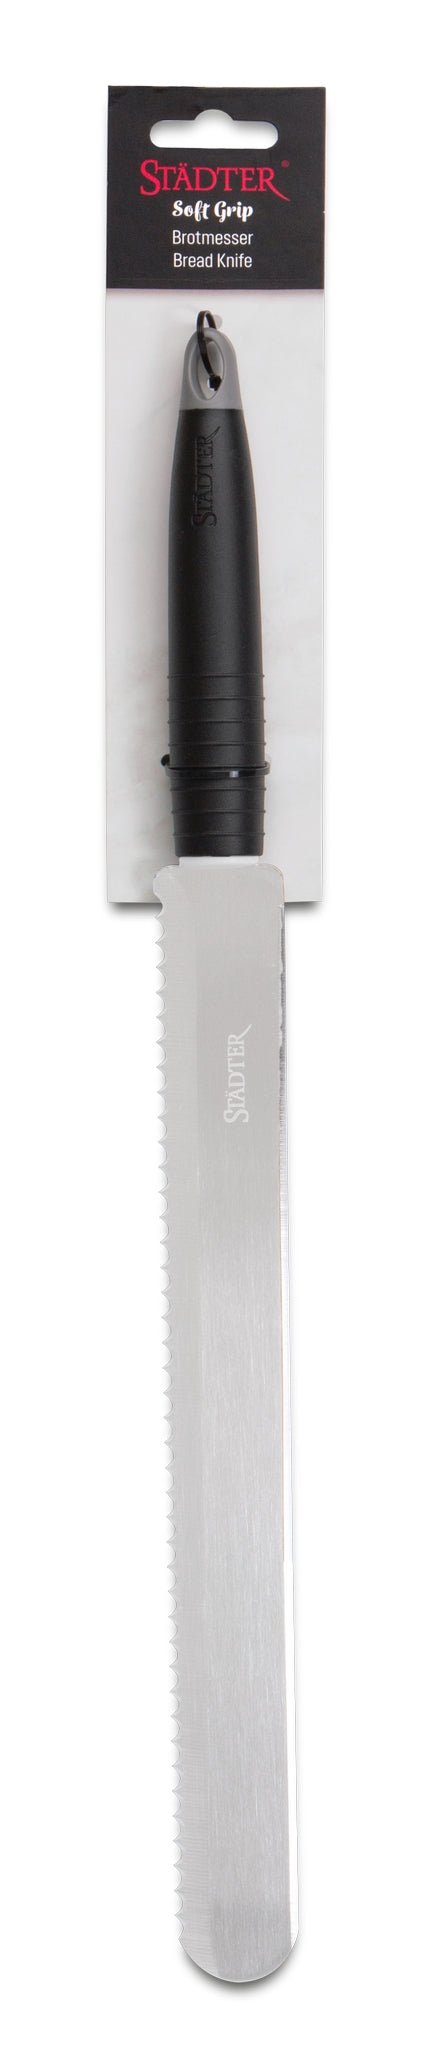 Städter 'Soft-Grip Brotmesser 44,0/30,0 x 3,4 cm'-ST-640399